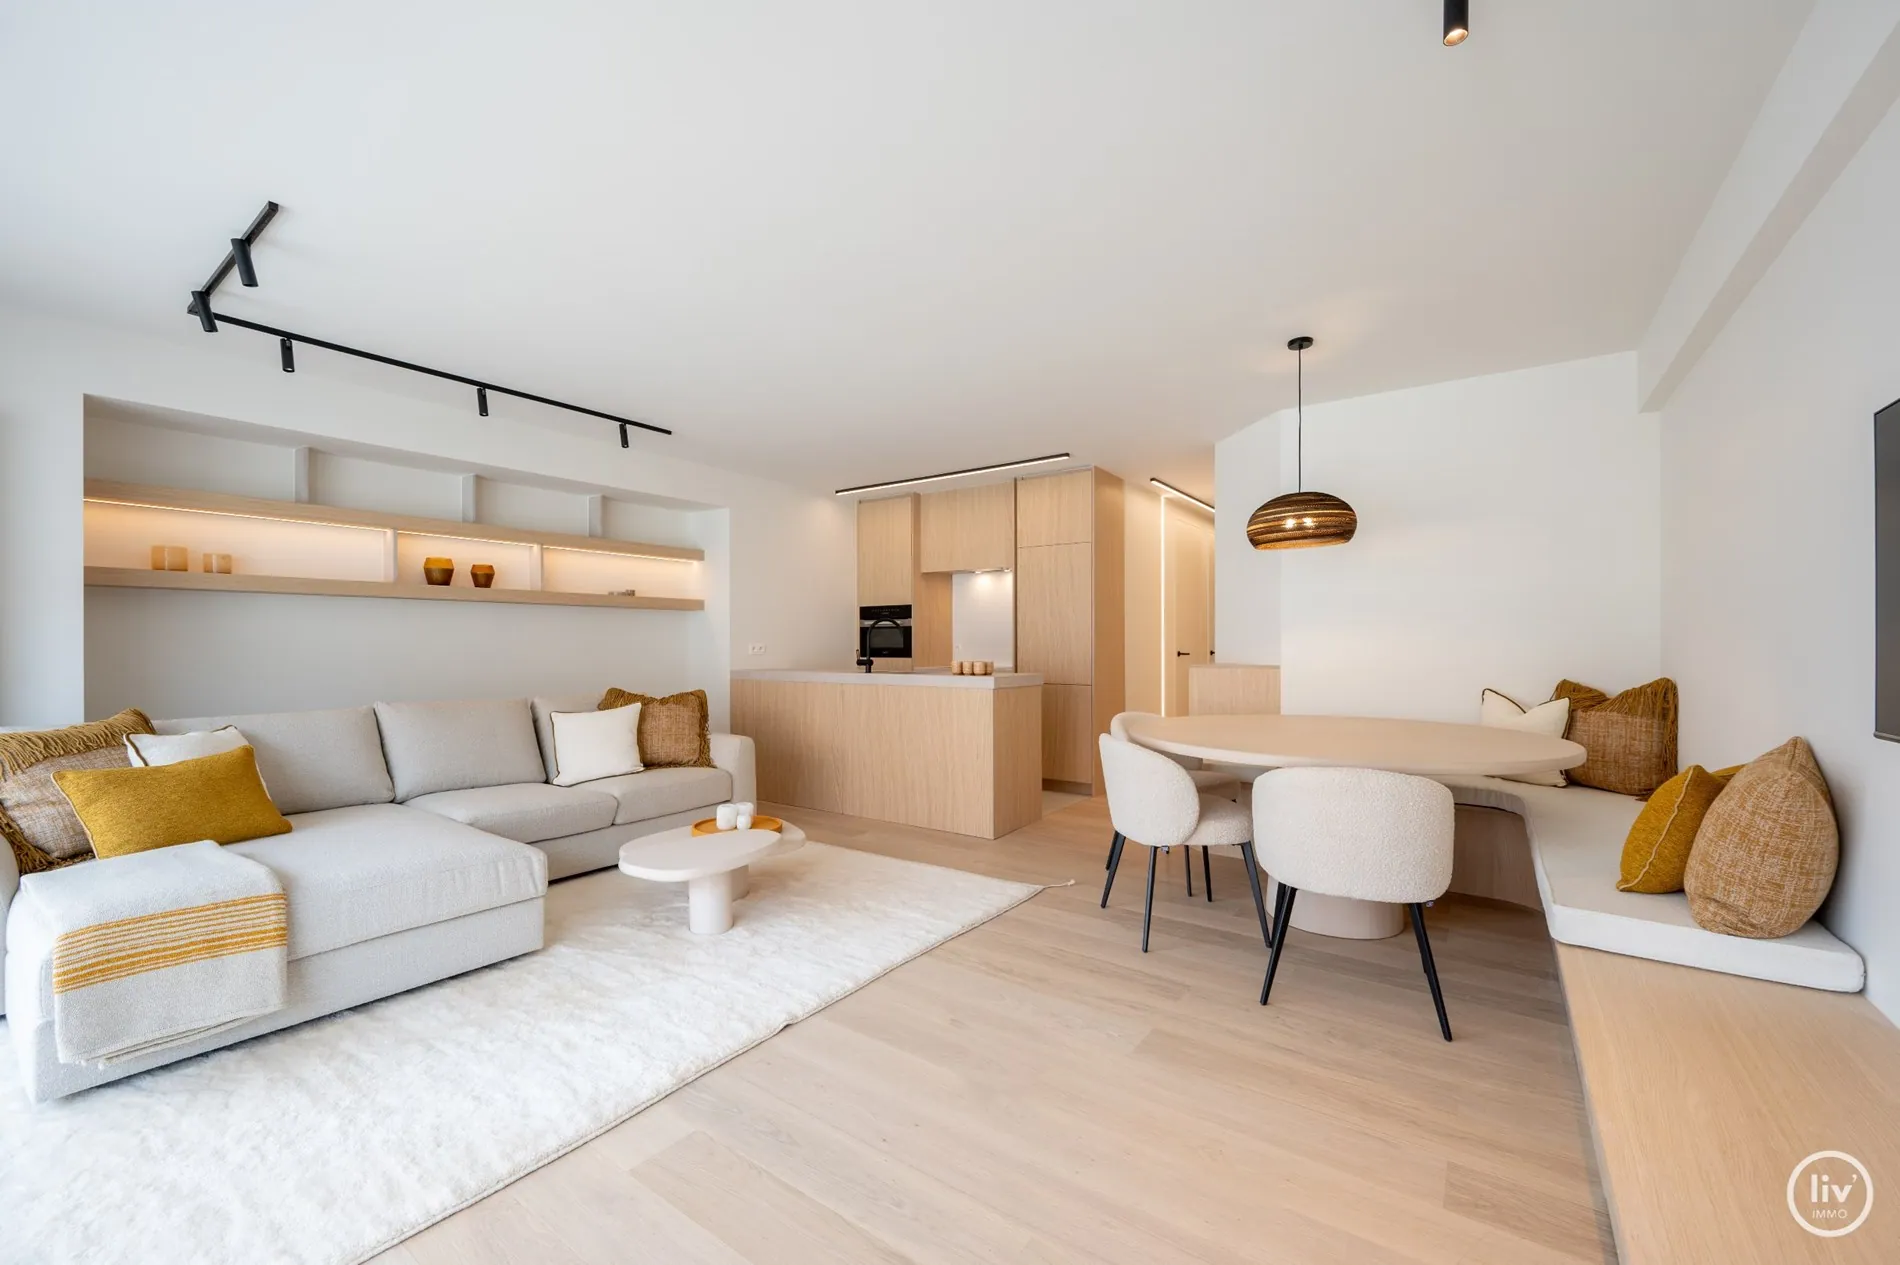 Magnifique appartement rénové de 3 chambres, idéalement situé sur la Zoutelaan, à proximité de la Lippenslaan à Knokke.